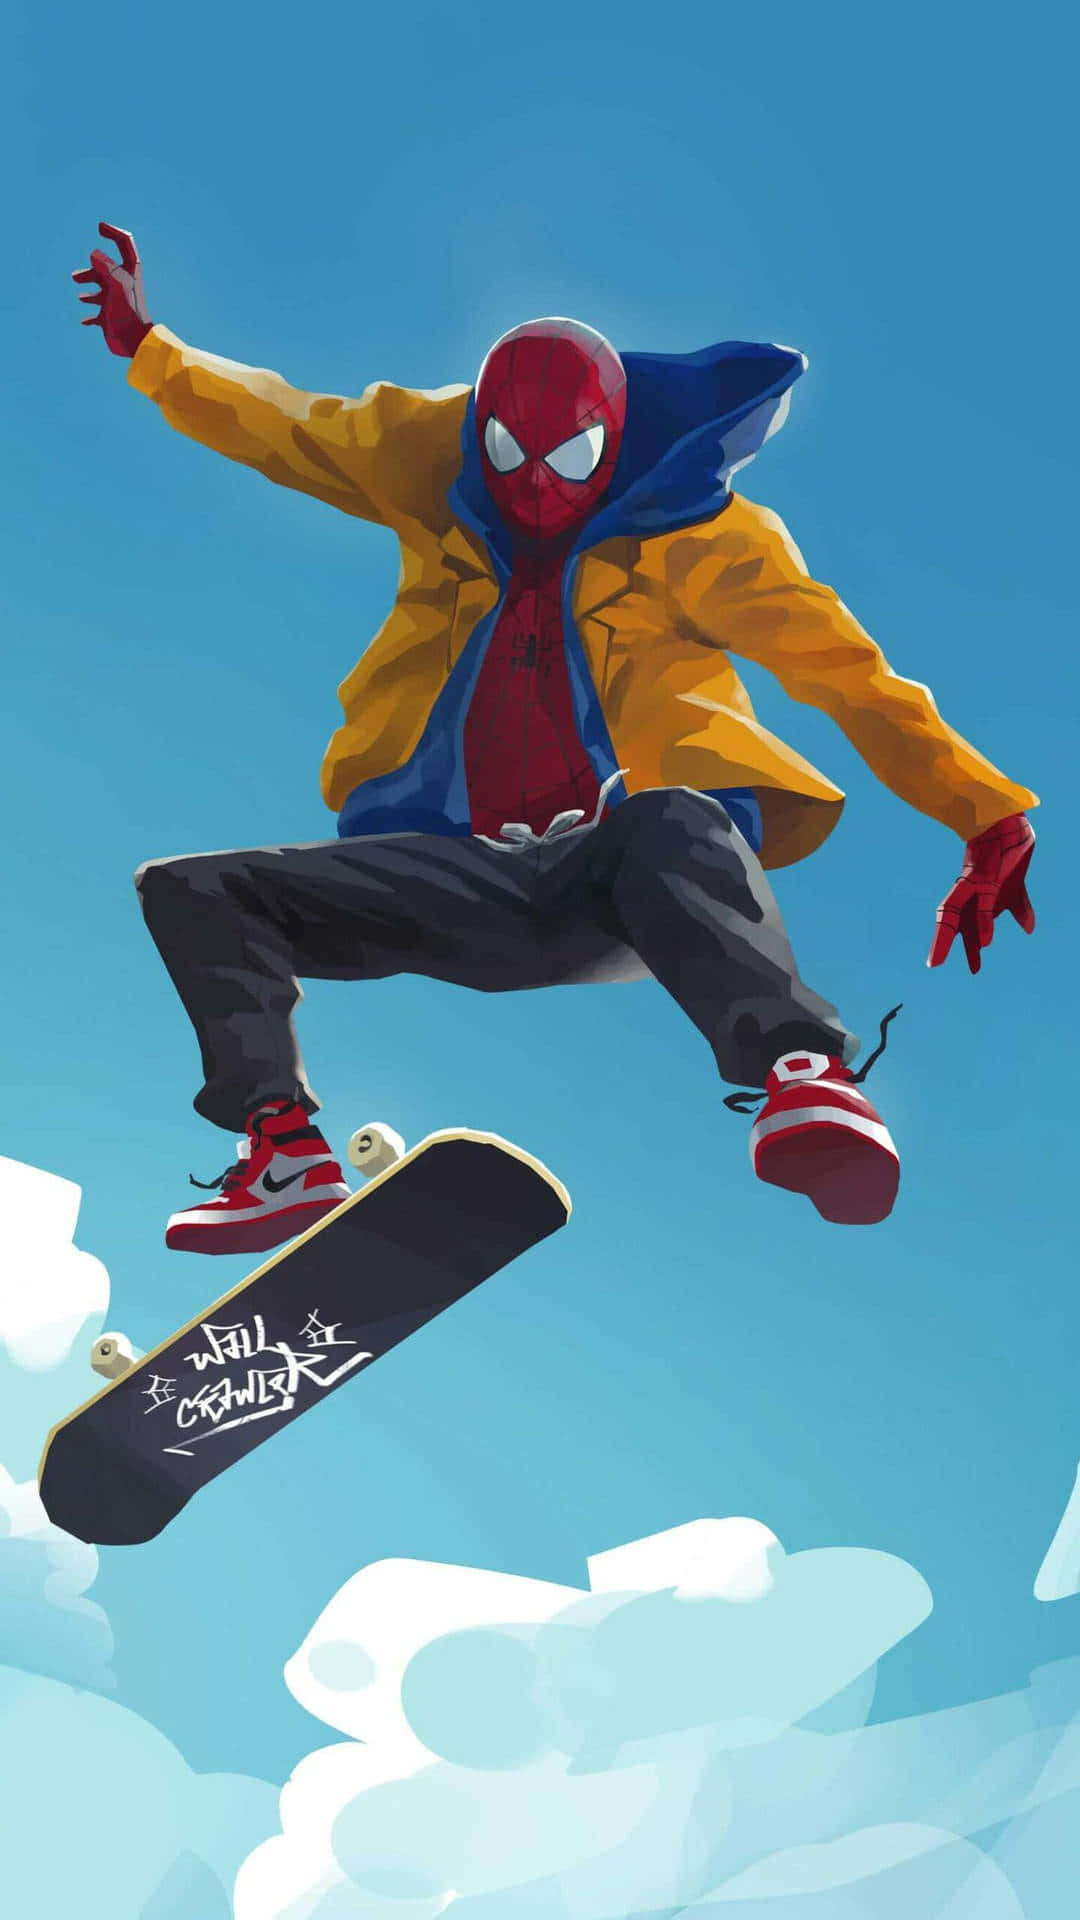 Spiderman Skateboard Trick Aesthetic Wallpaper